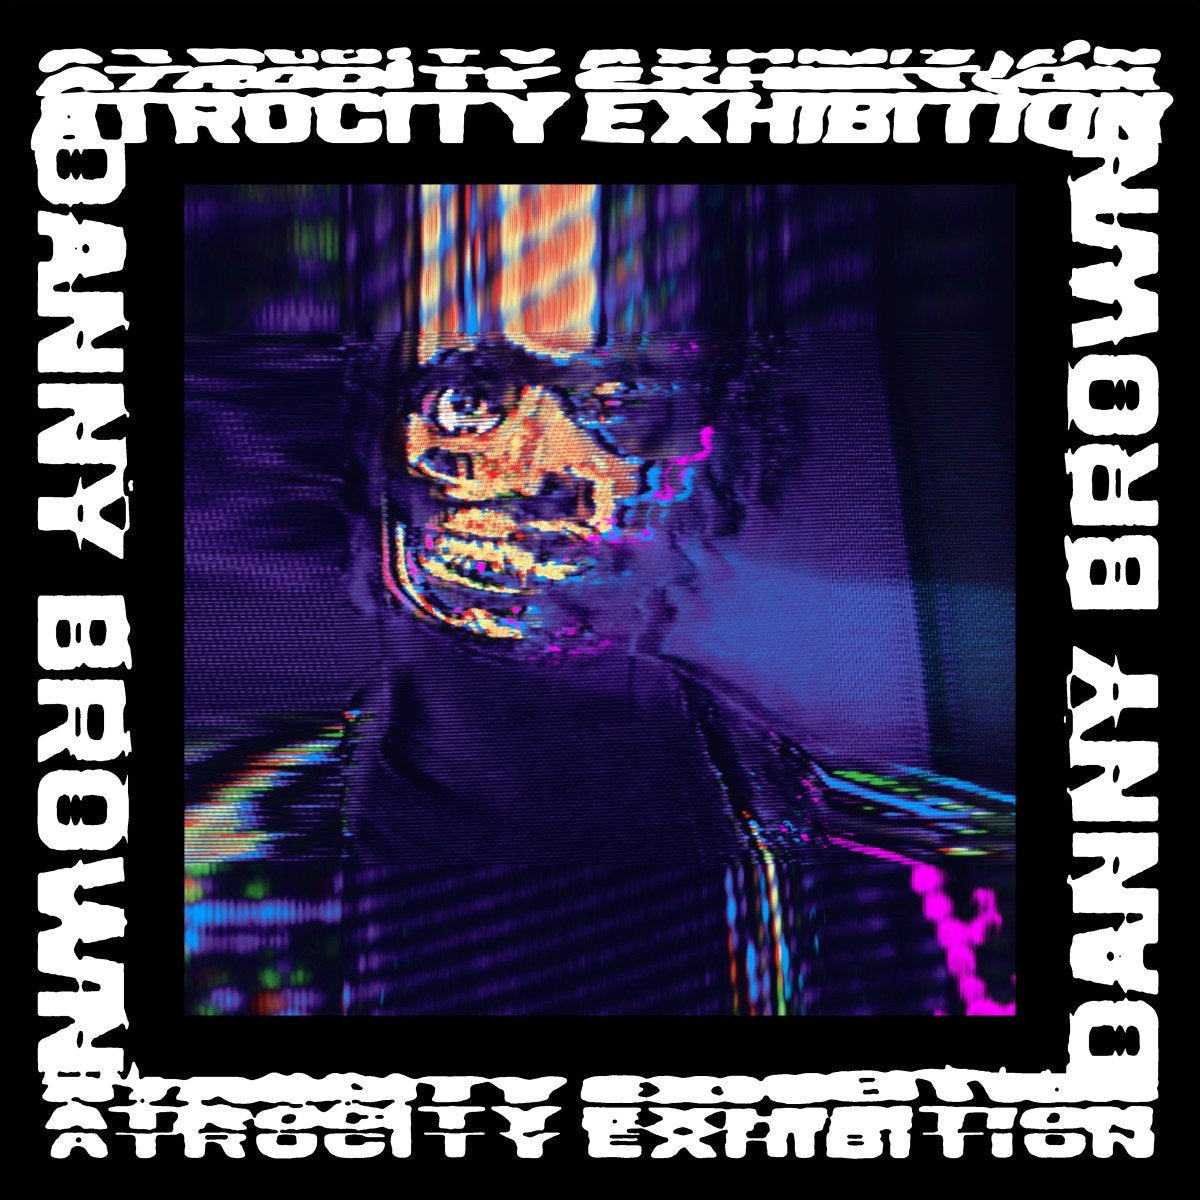 Brown, Danny "Atrocity Exhibition"